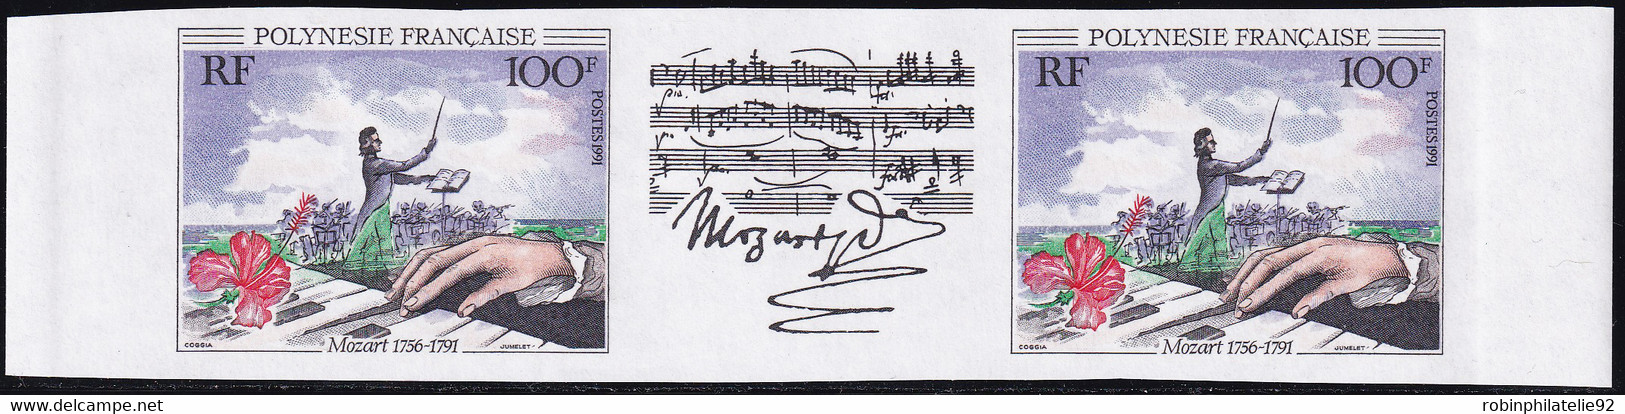 Polynésie Non Dentelés N°389 A  100f Mozart La Paire Avec Vignette Centrale Qualité:** - Imperforates, Proofs & Errors